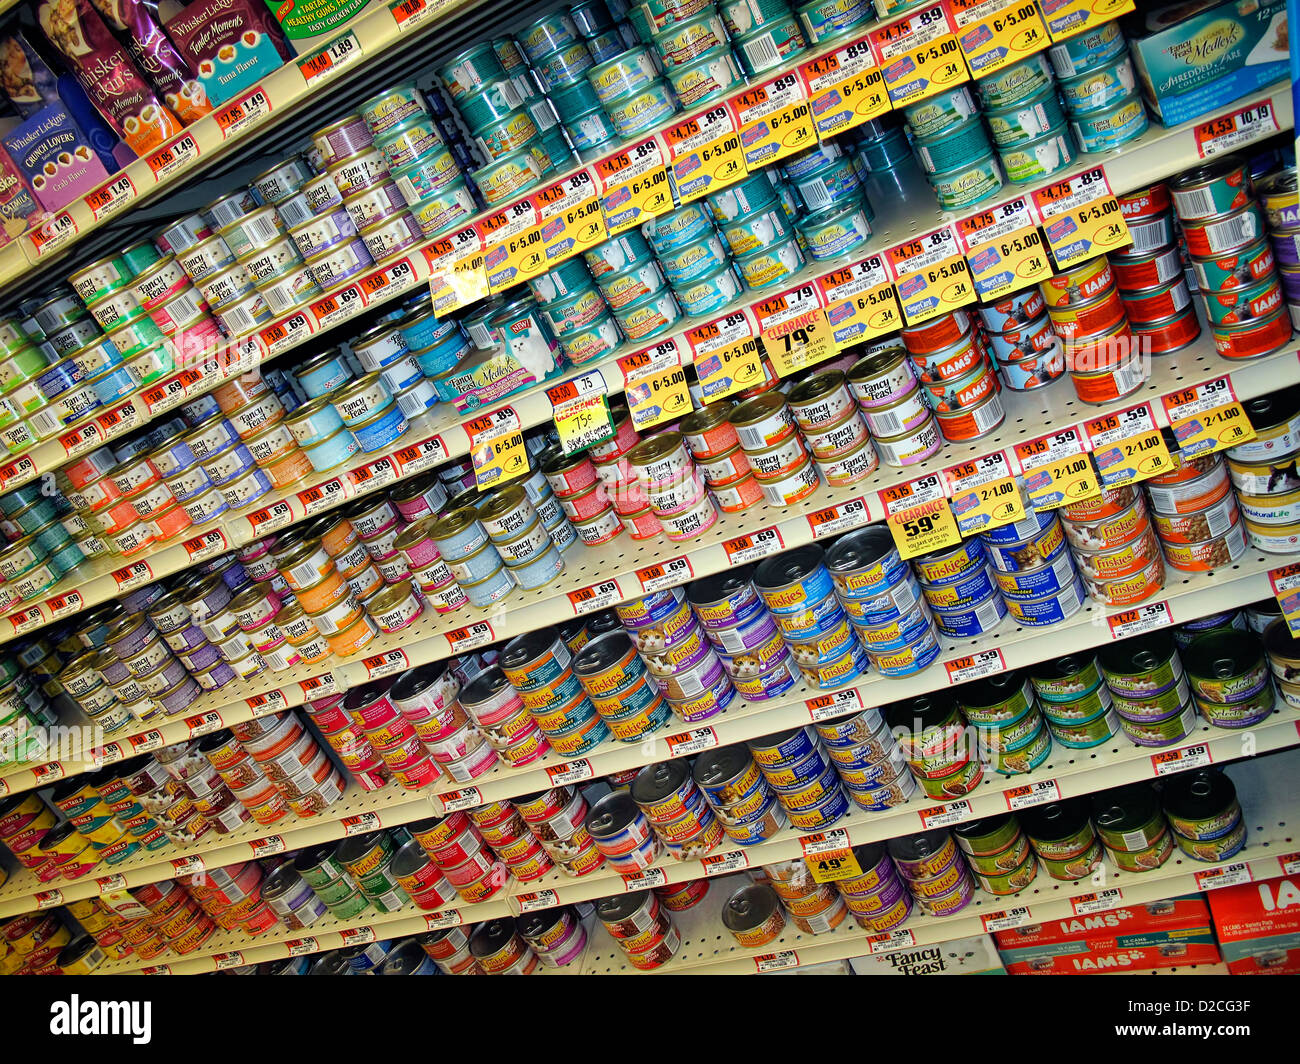 Vielfalt Dosen Katzenfutter Produkte auf einem Regal Stockfotografie - Alamy